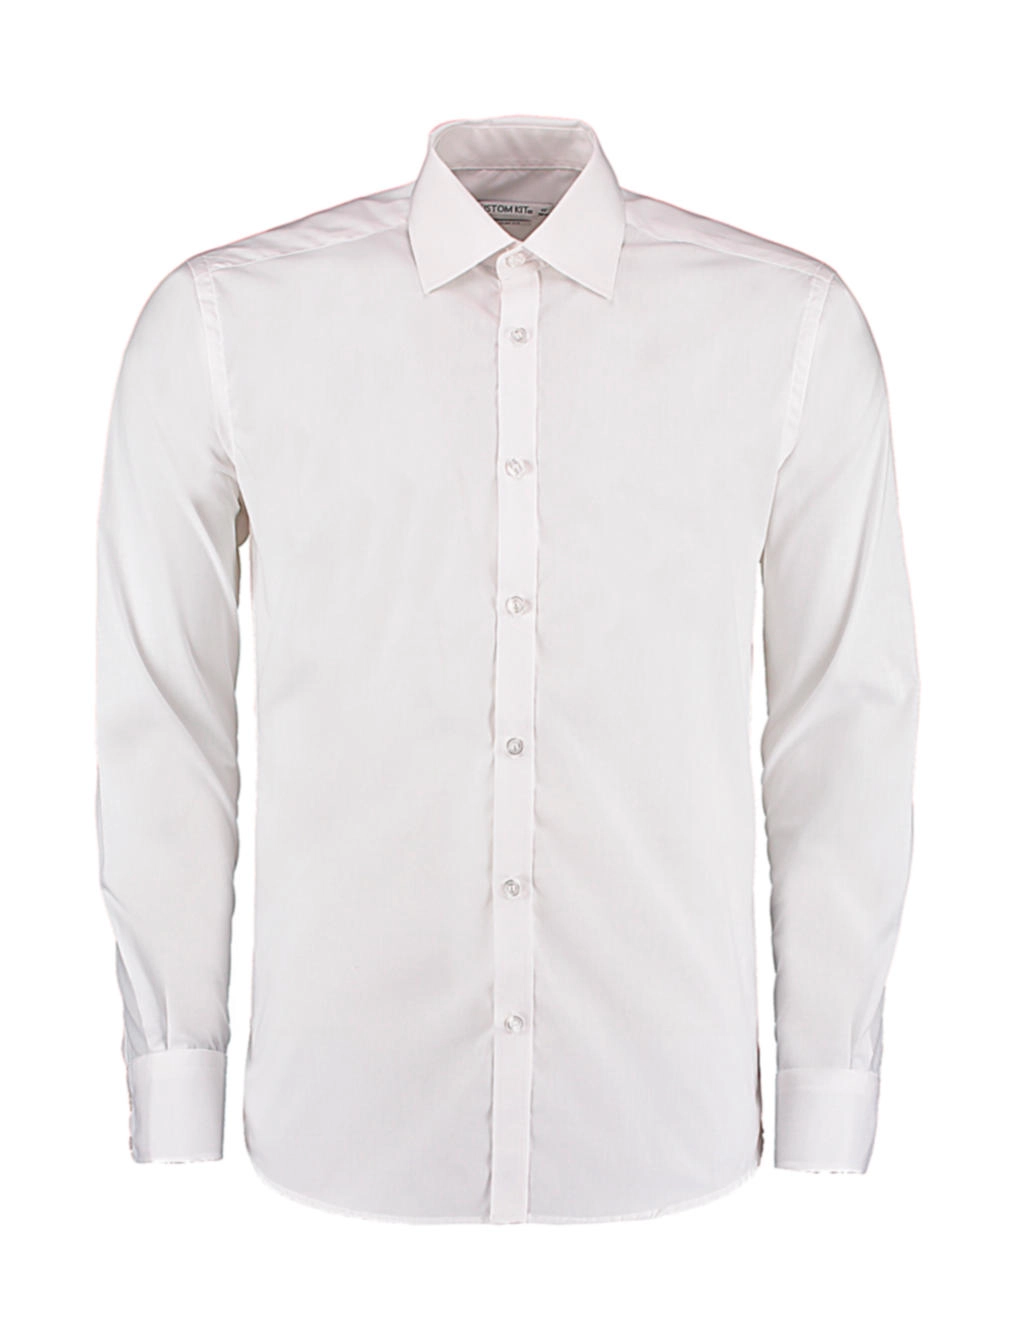 Slim Fit Business Shirt LS zum Besticken und Bedrucken in der Farbe White mit Ihren Logo, Schriftzug oder Motiv.